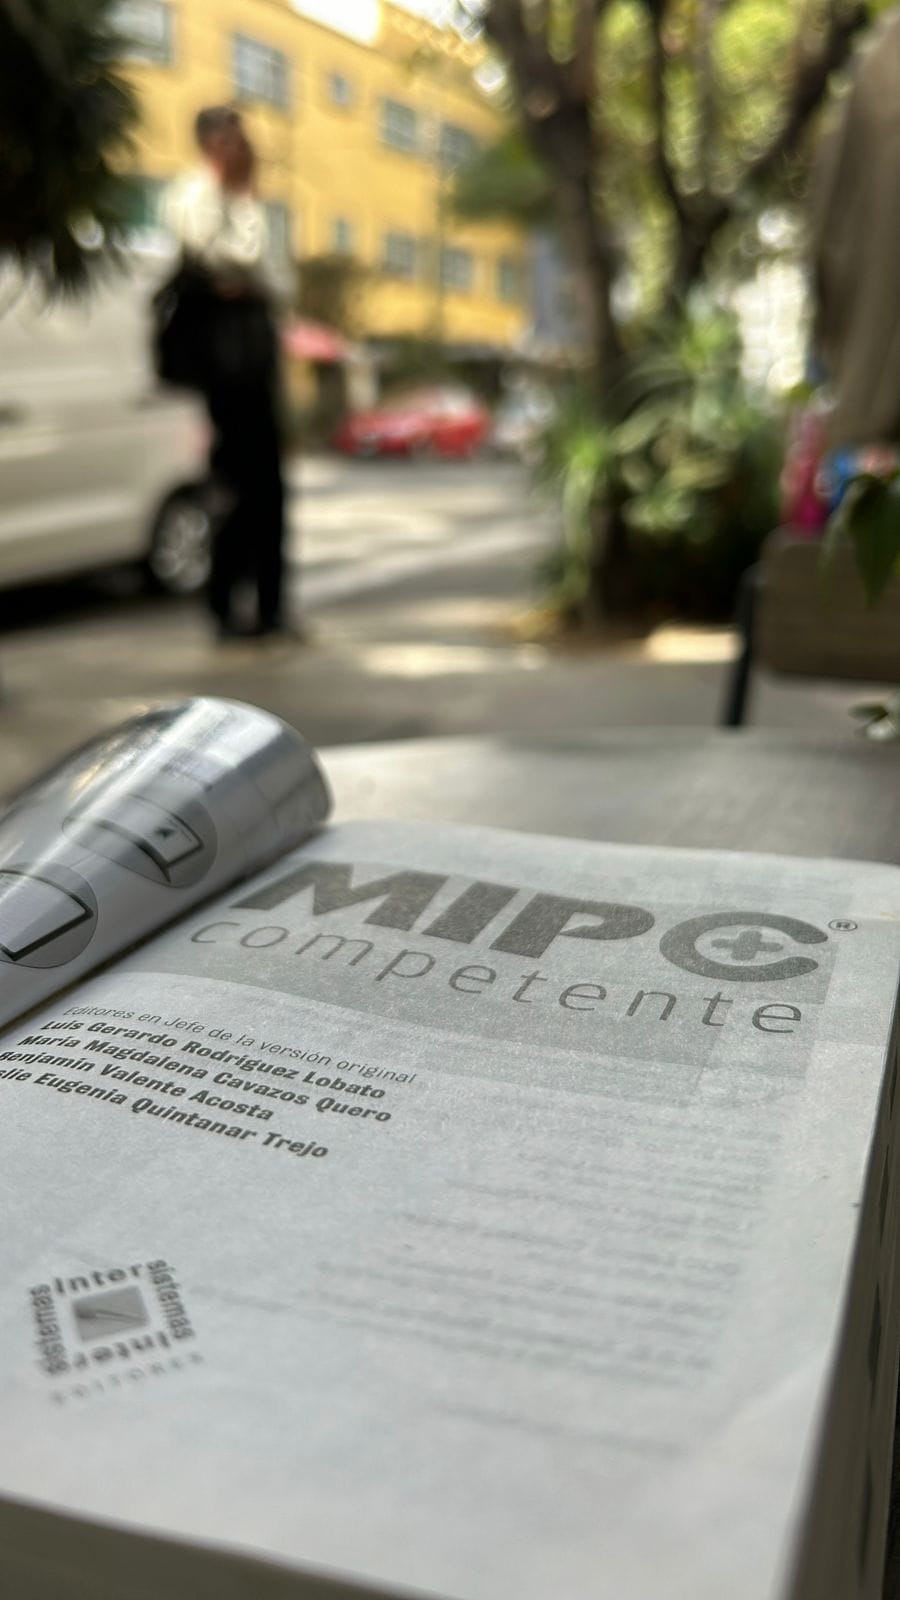 MIP Competente: Elevando la Experiencia del Médico Interno de Pregrado a través de la Plataforma MIP